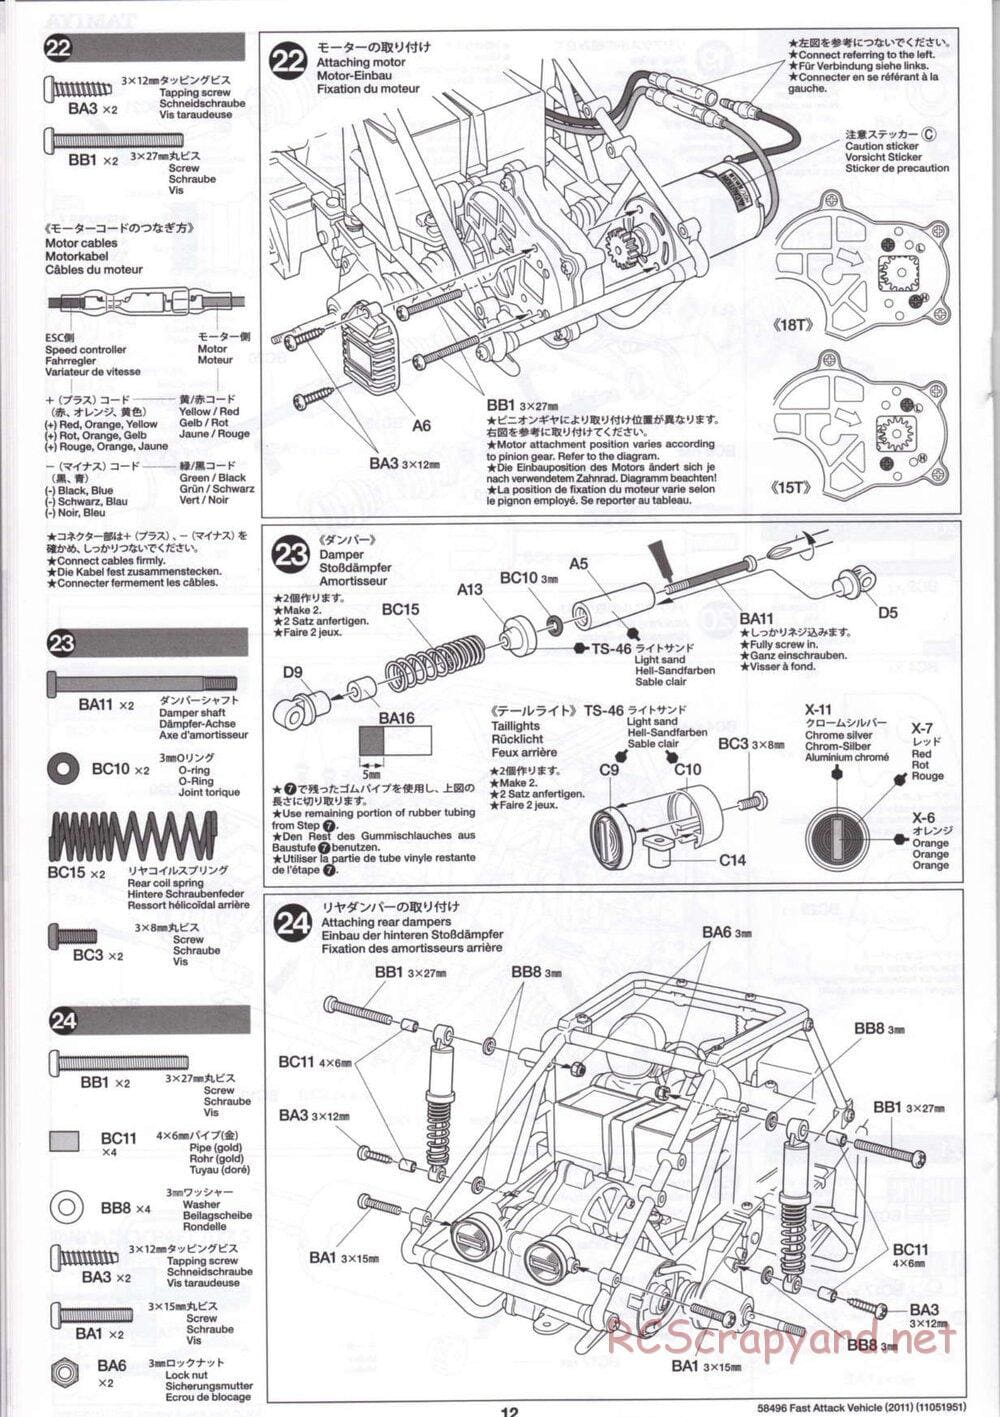 Tamiya - Fast Attack Vehicle 2011 - FAV Chassis - Manual - Page 12